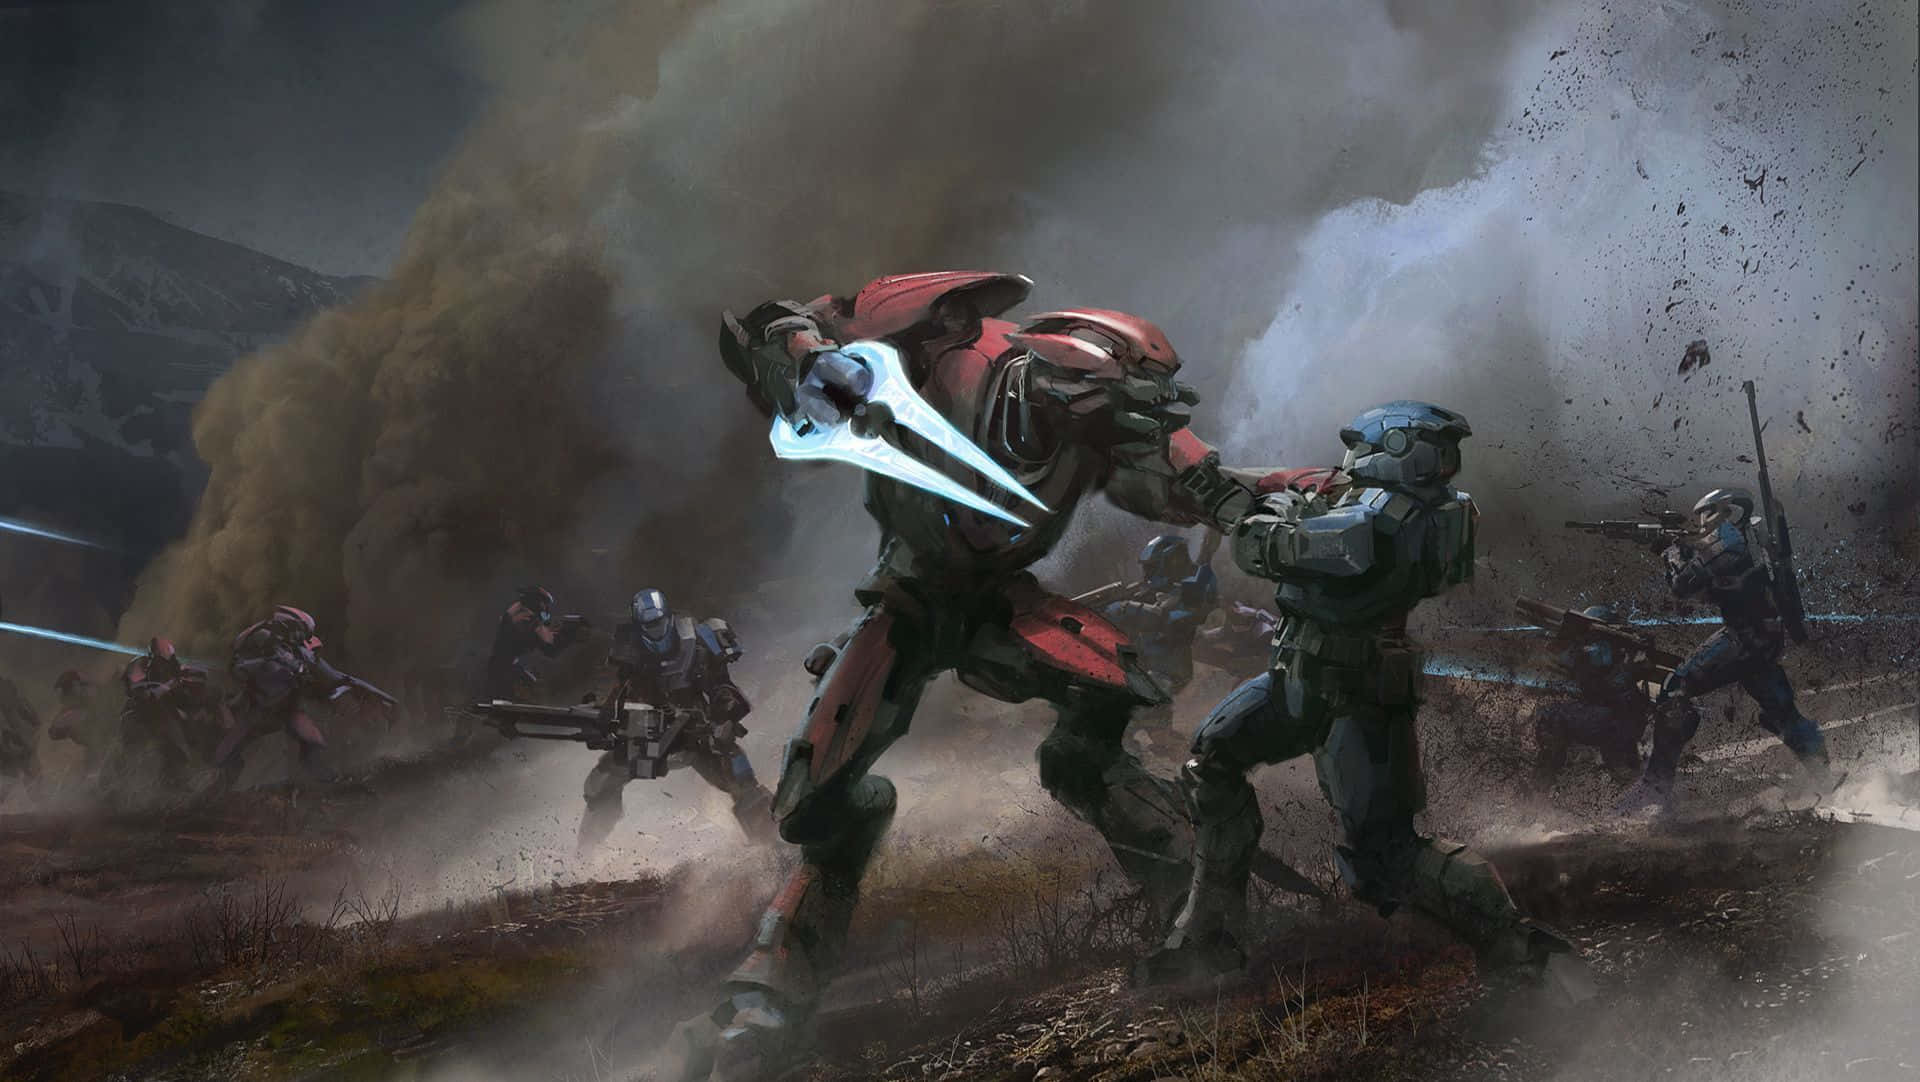 Epic Battle Scene in Halo Covenant Wallpaper